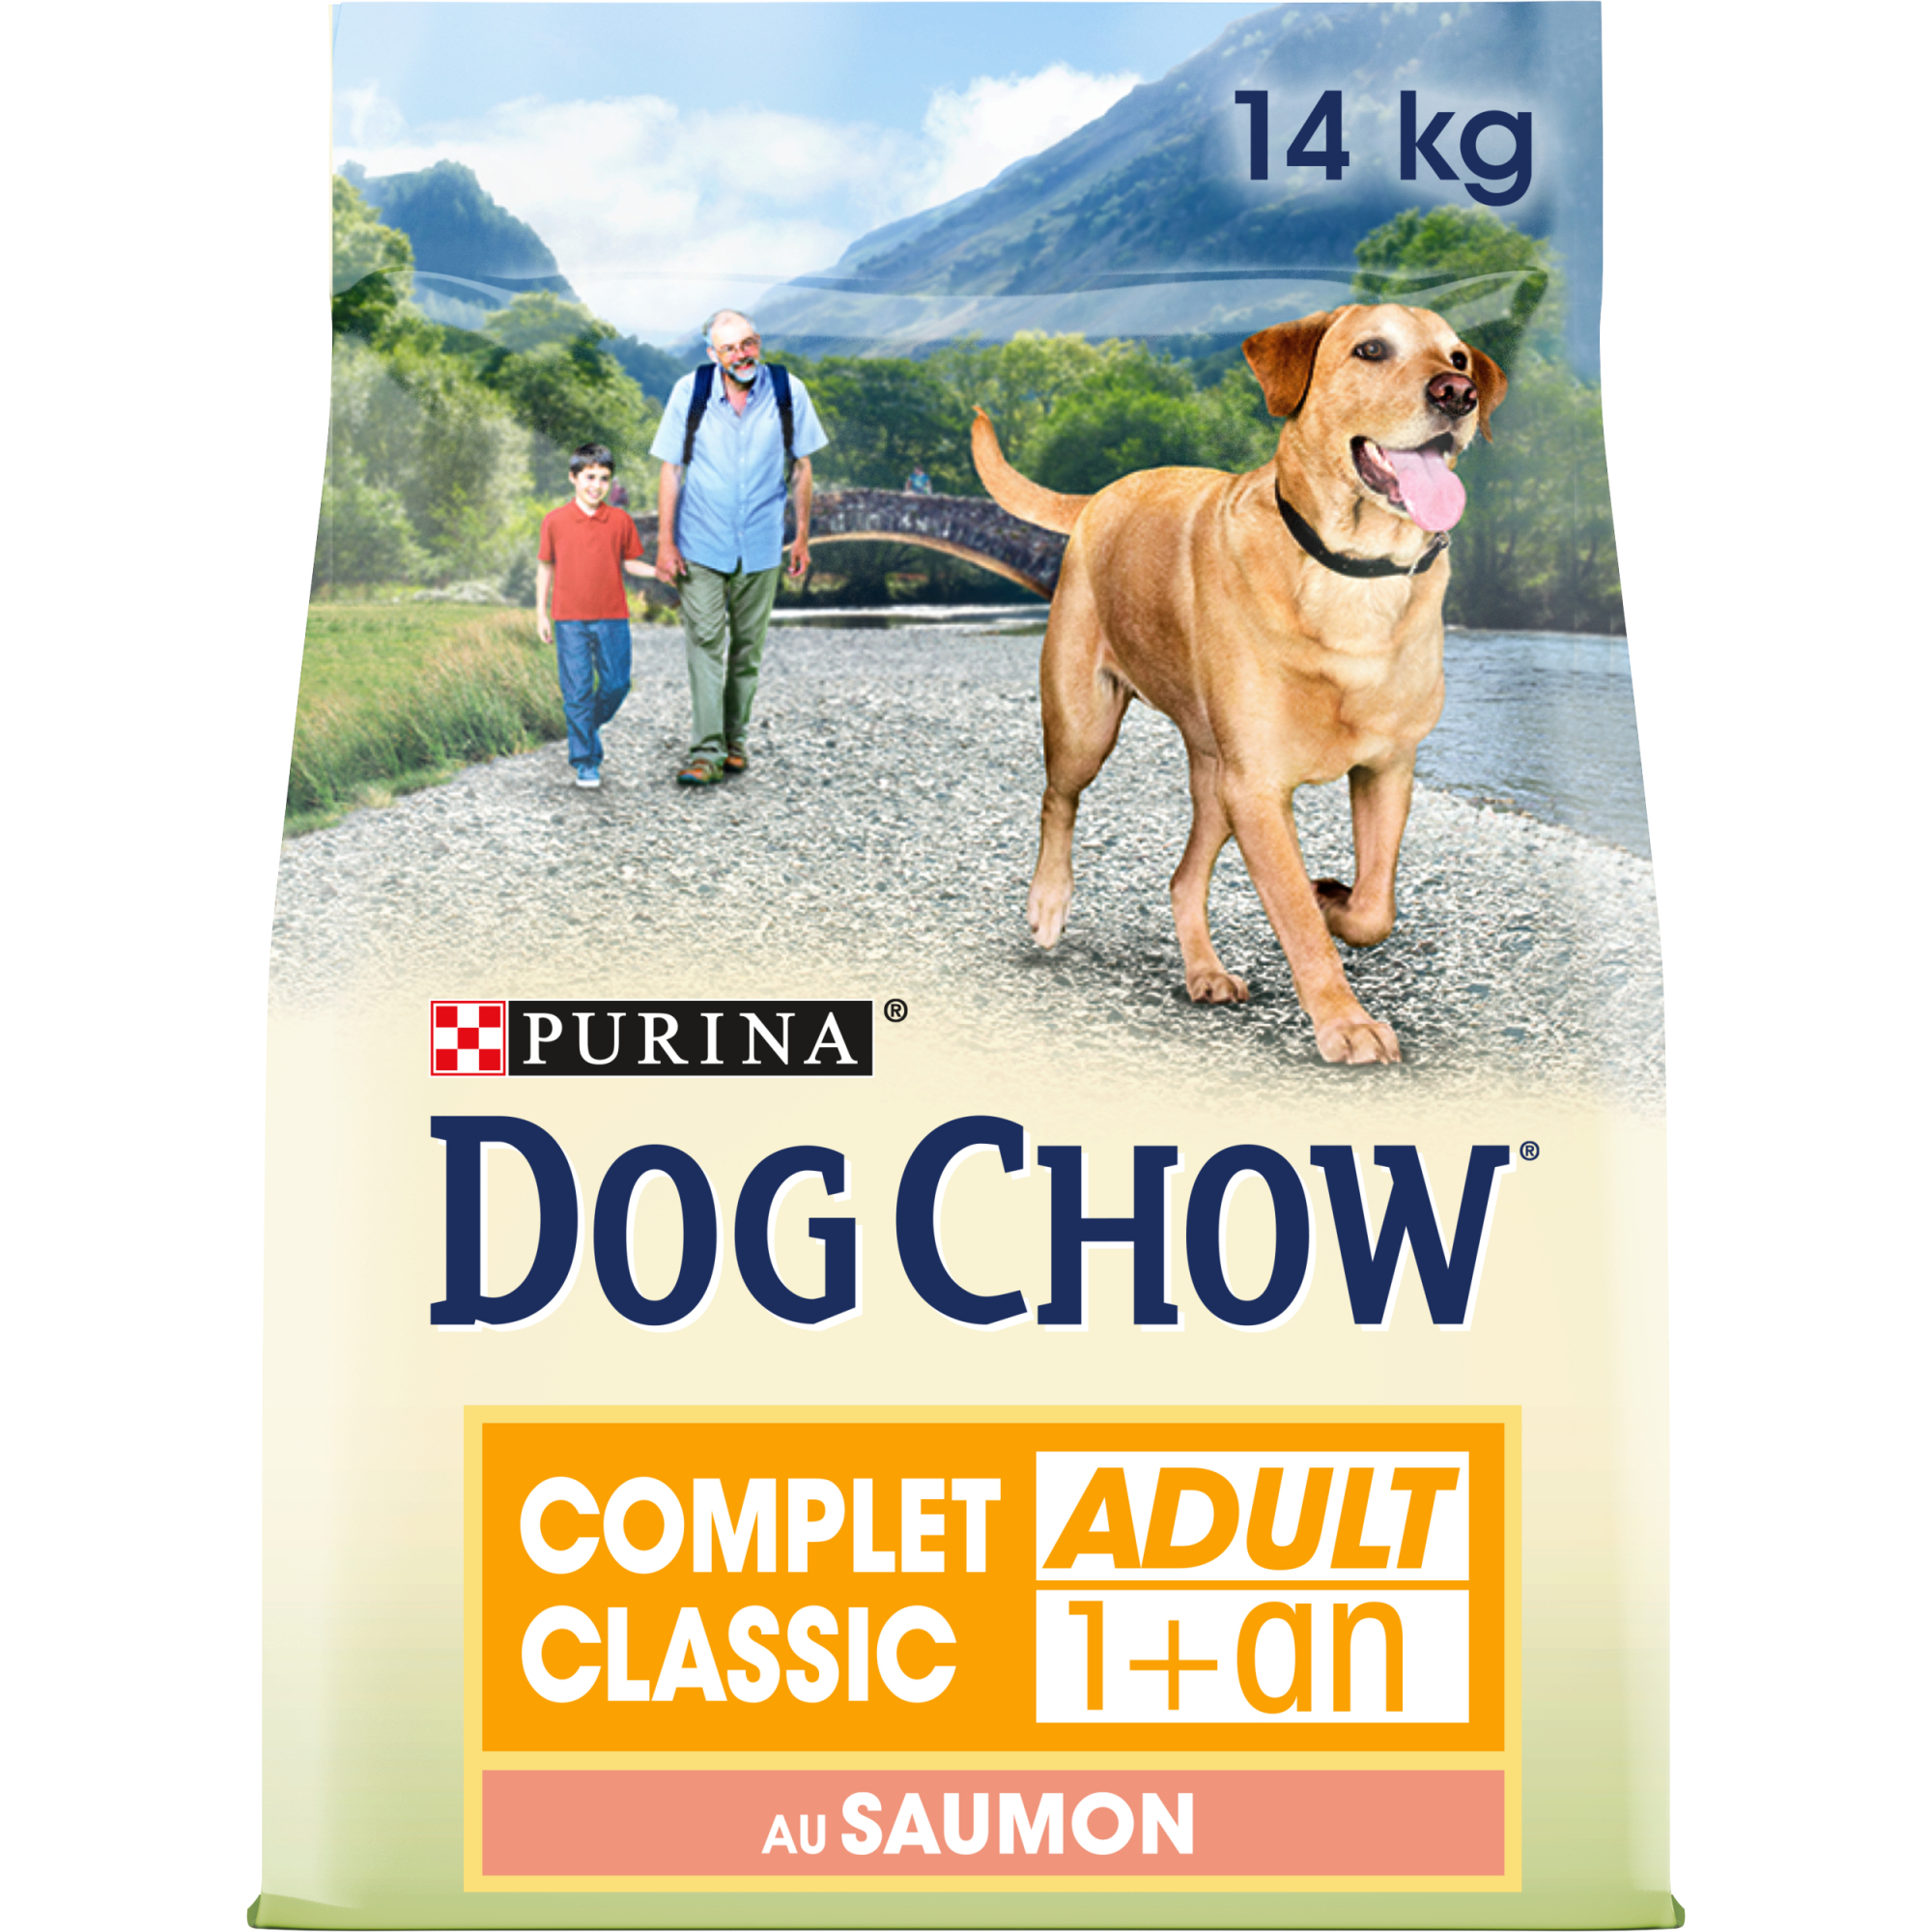 Croquetes para cães DOG CHOW Completo com Salmão